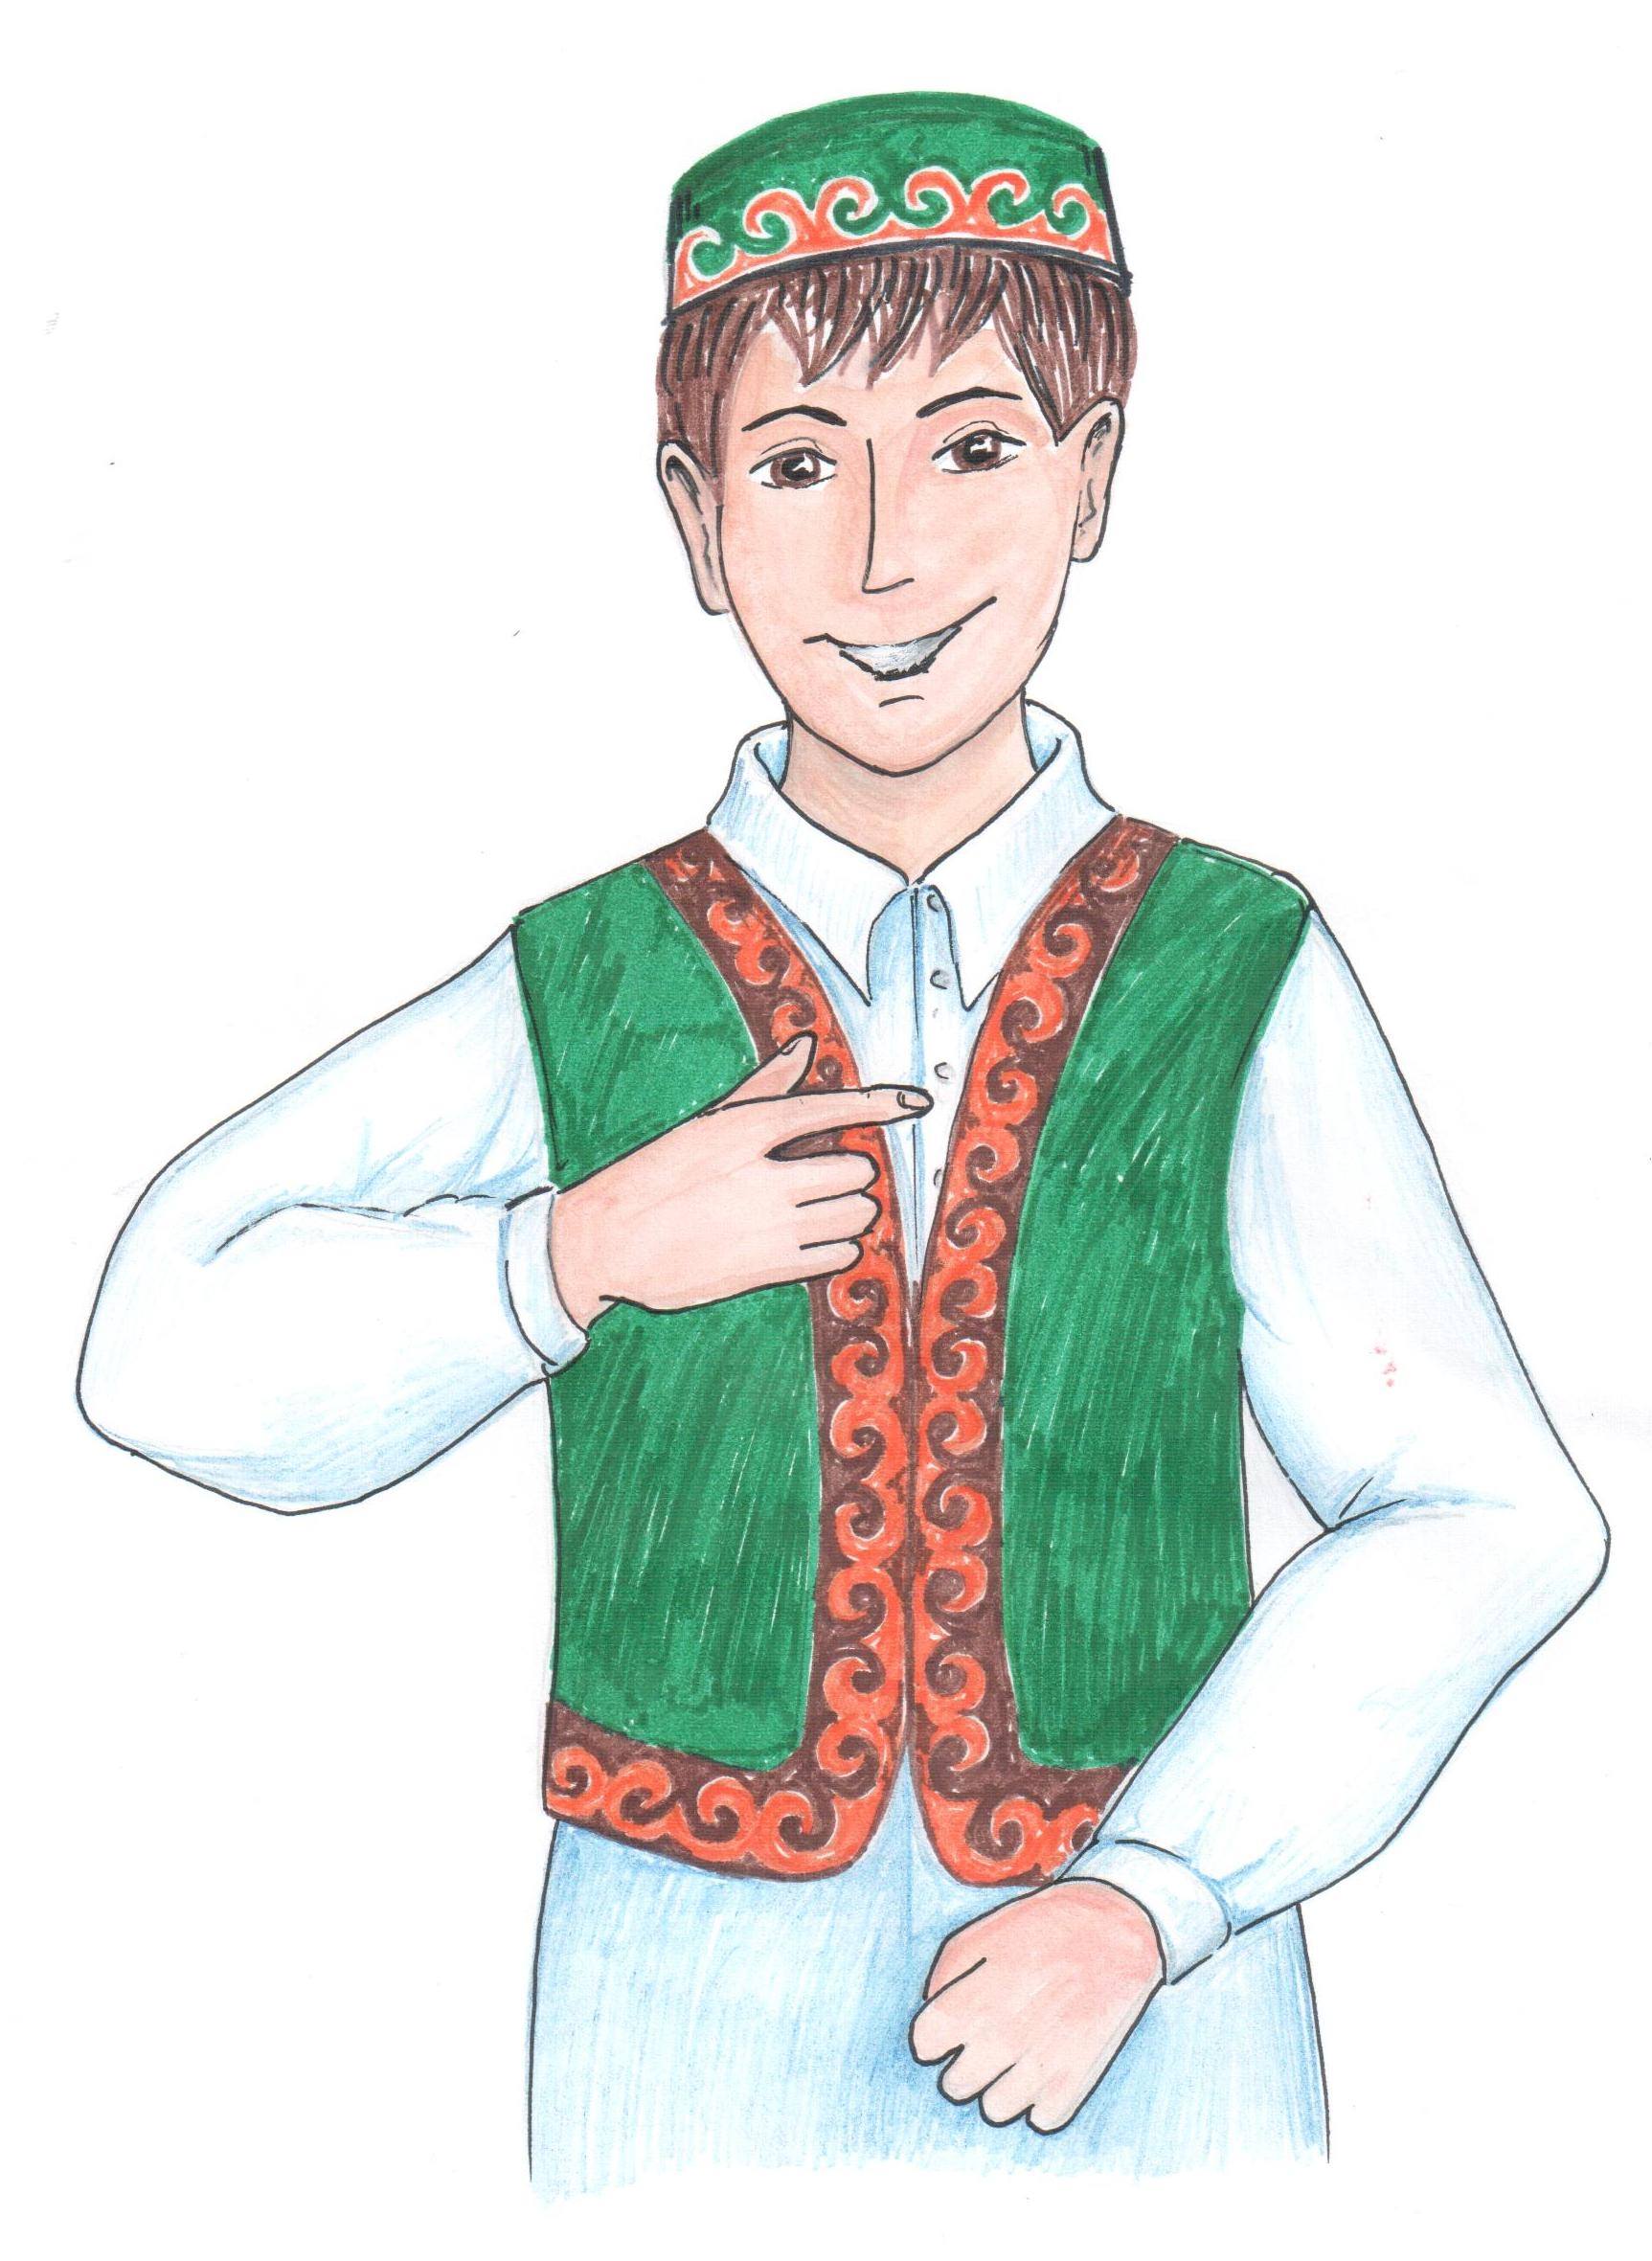 Башкирская Национальная одежда башкир рисунок